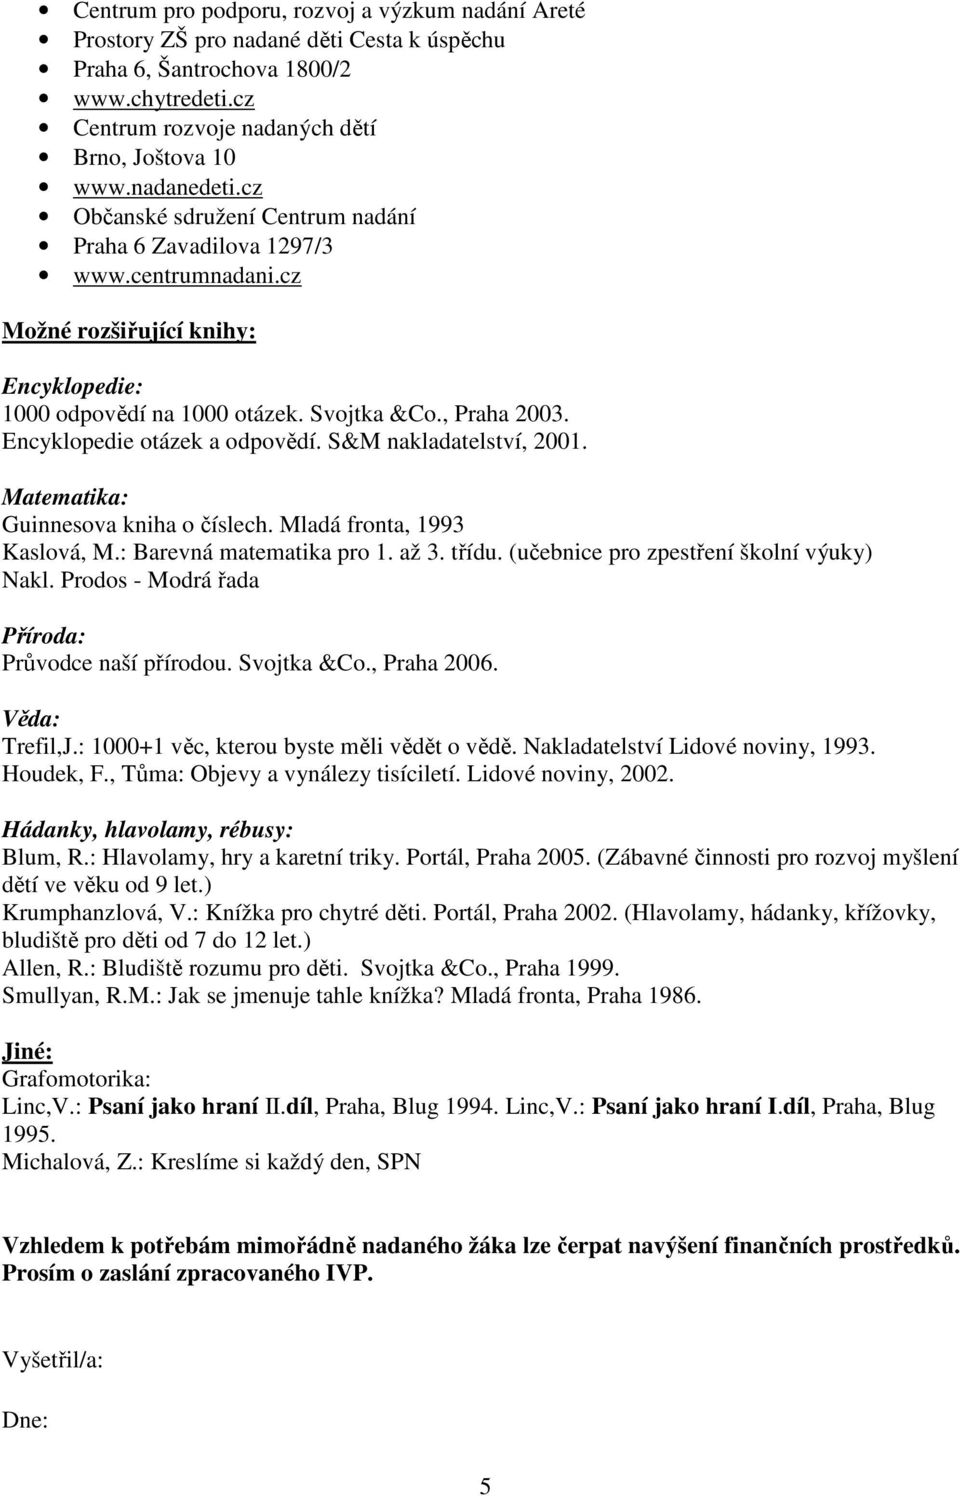 Encyklopedie otázek a odpovědí. S&M nakladatelství, 2001. Matematika: Guinnesova kniha o číslech. Mladá fronta, 1993 Kaslová, M.: Barevná matematika pro 1. až 3. třídu.